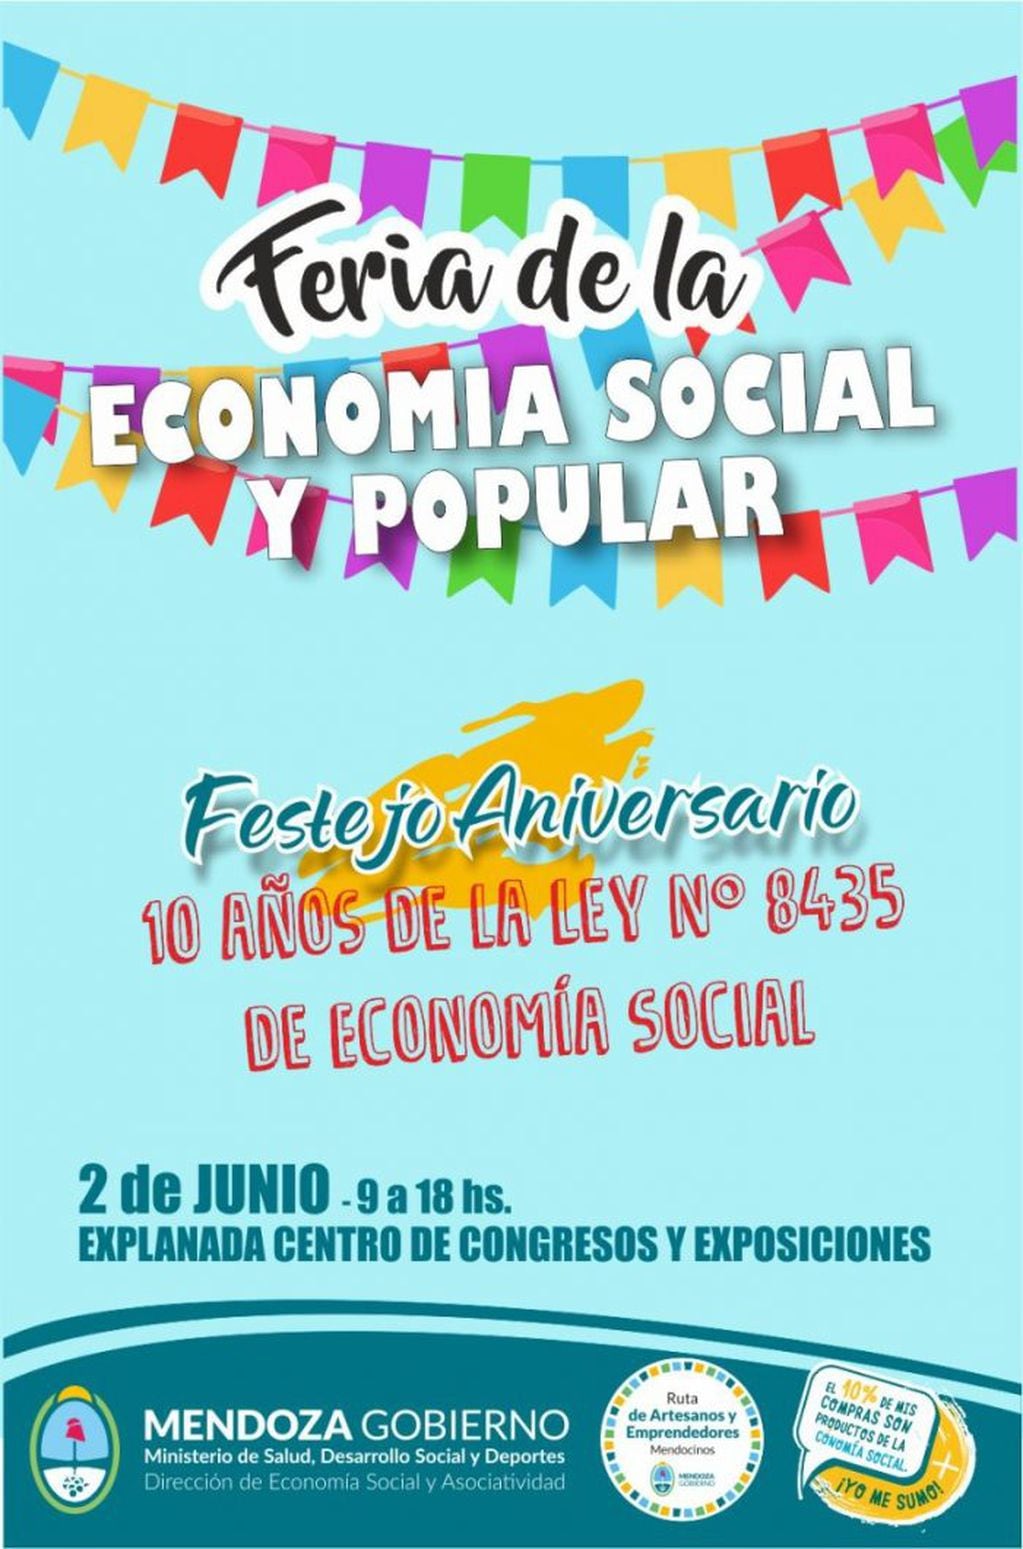 Feria de la Economía Social y Popular de Mendoza con motivo del aniversario de la promulgación de la Ley 8435.